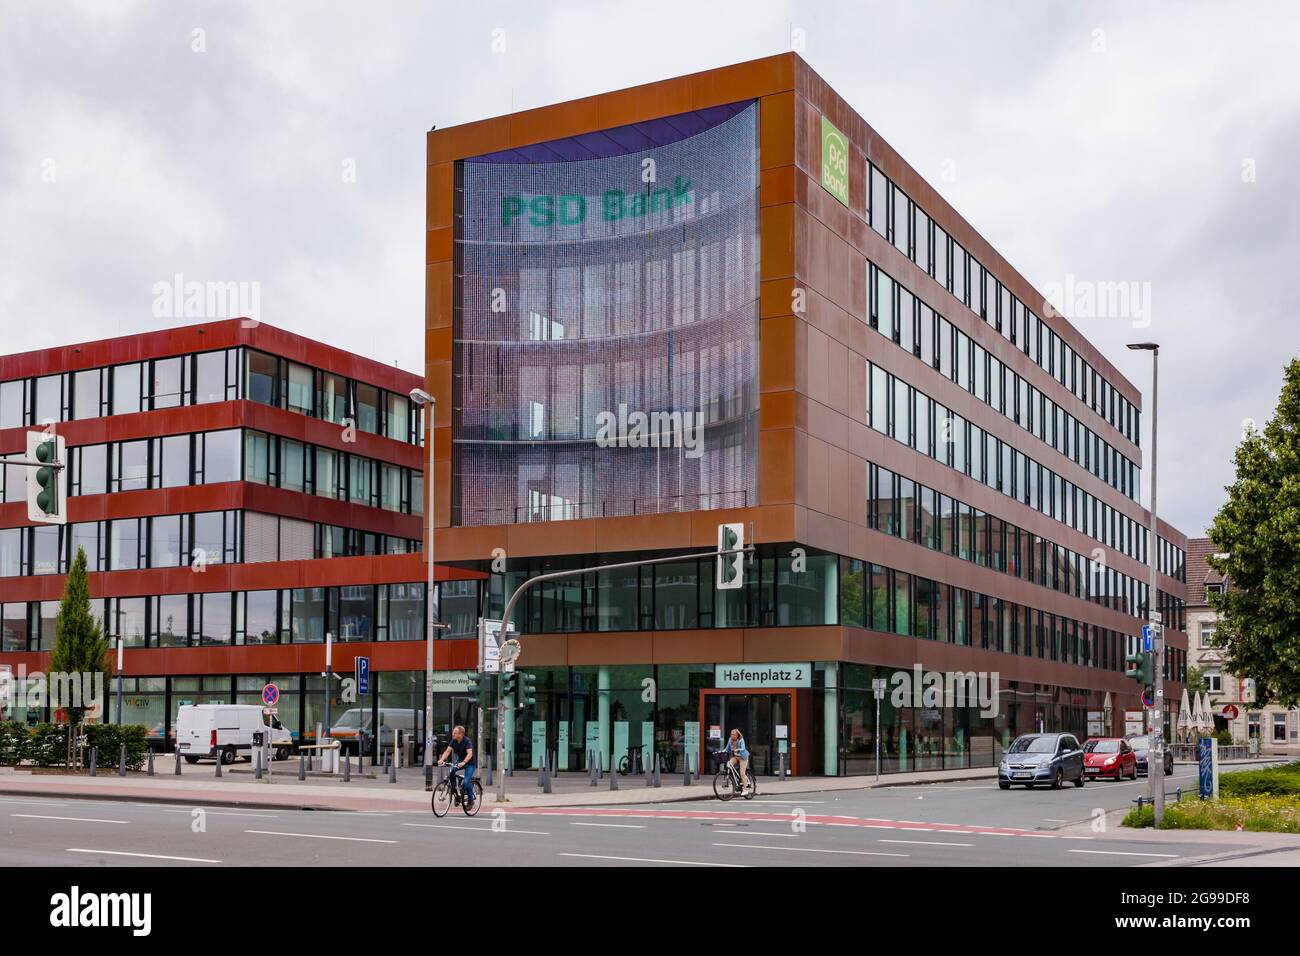 Medienfassade der PSD Bank Westfalen-Lippe am Hafenplatz dienen 220.000 LEDs als Großleinwand, Münster, Nordrhein-Westfalen, Deutschland. Medienfassade Stockfoto